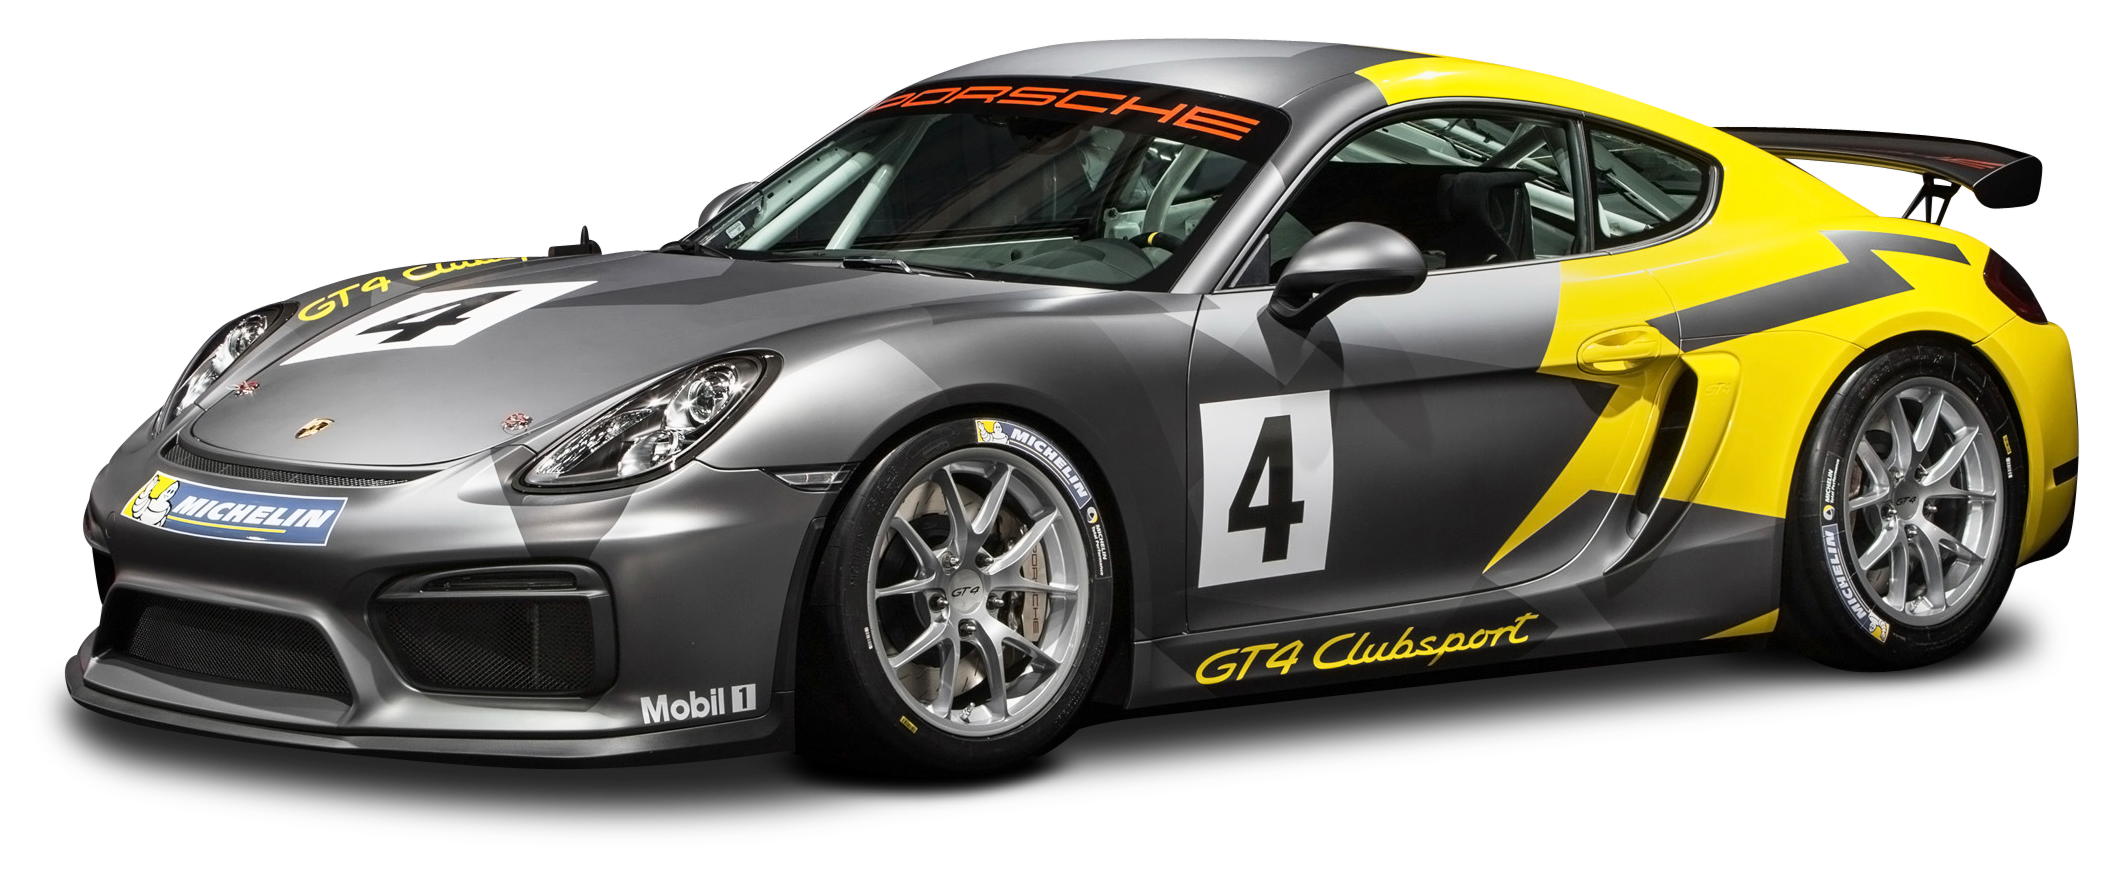 Porsche Cayman GT4 Clubsport Racing Car